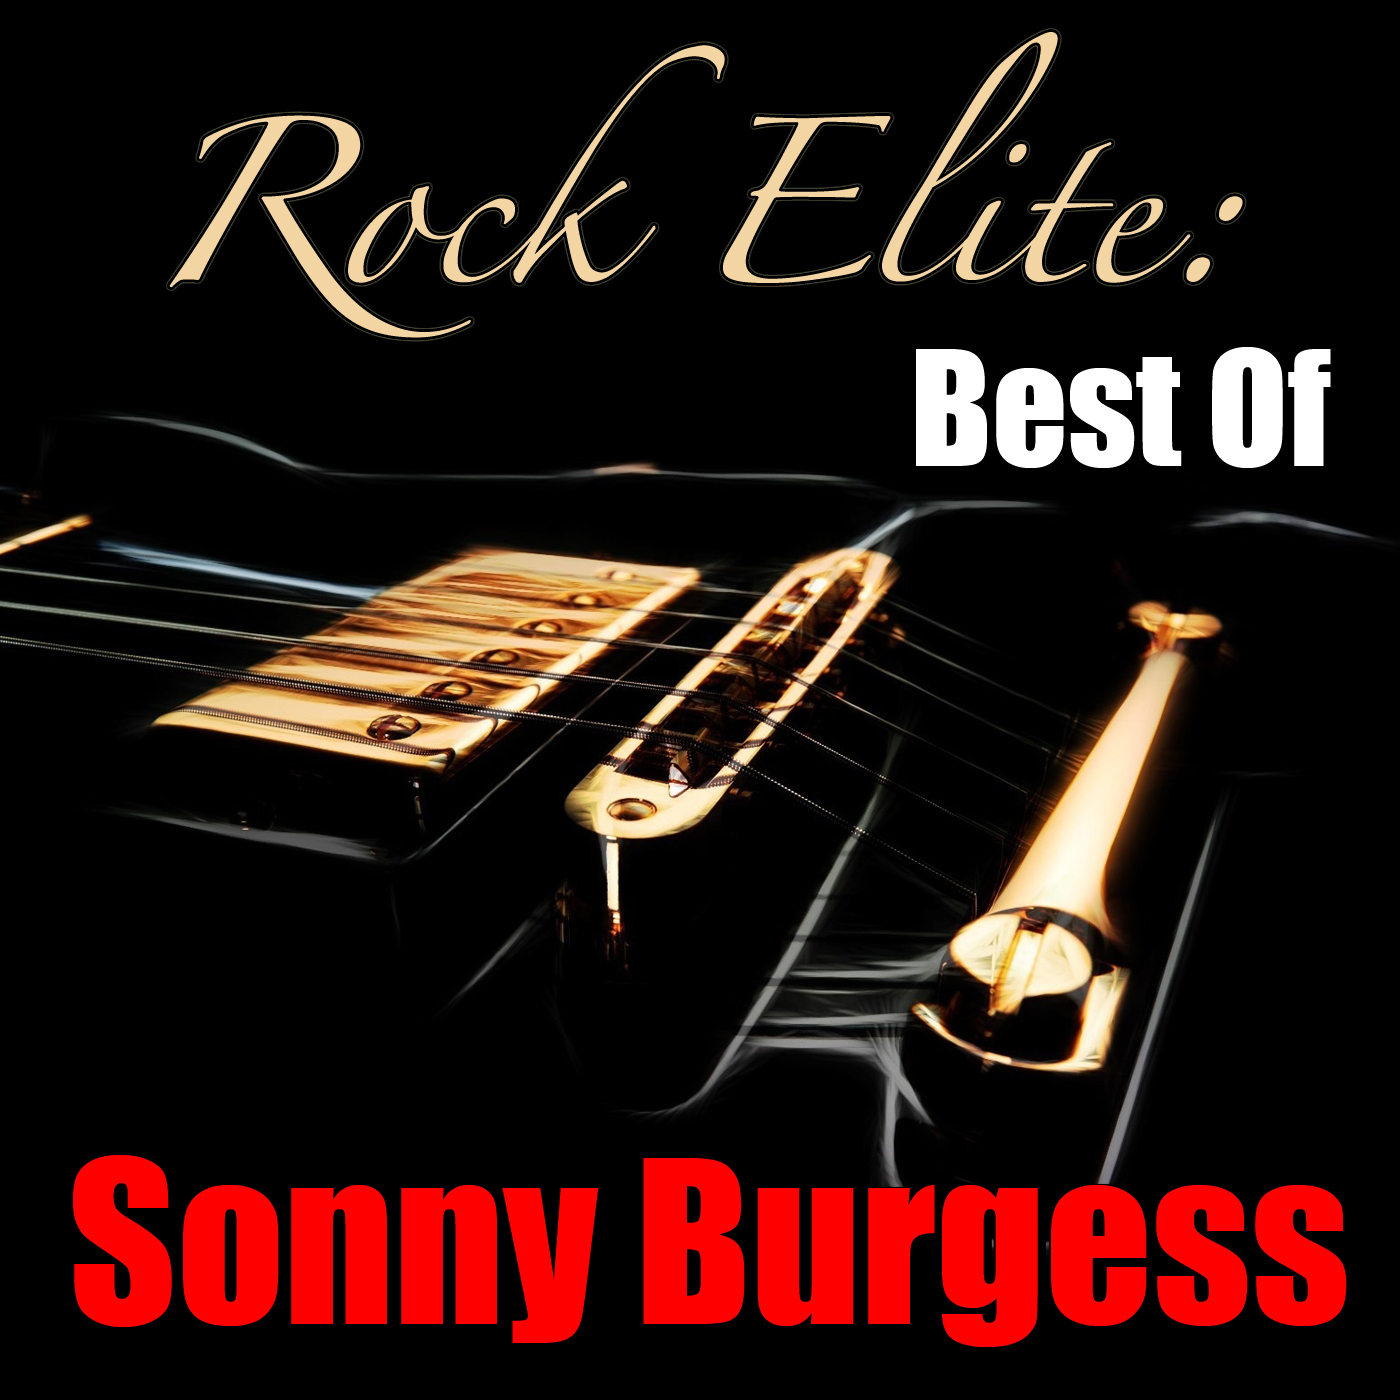 Rock Elite: Best Of Sonny Burgess